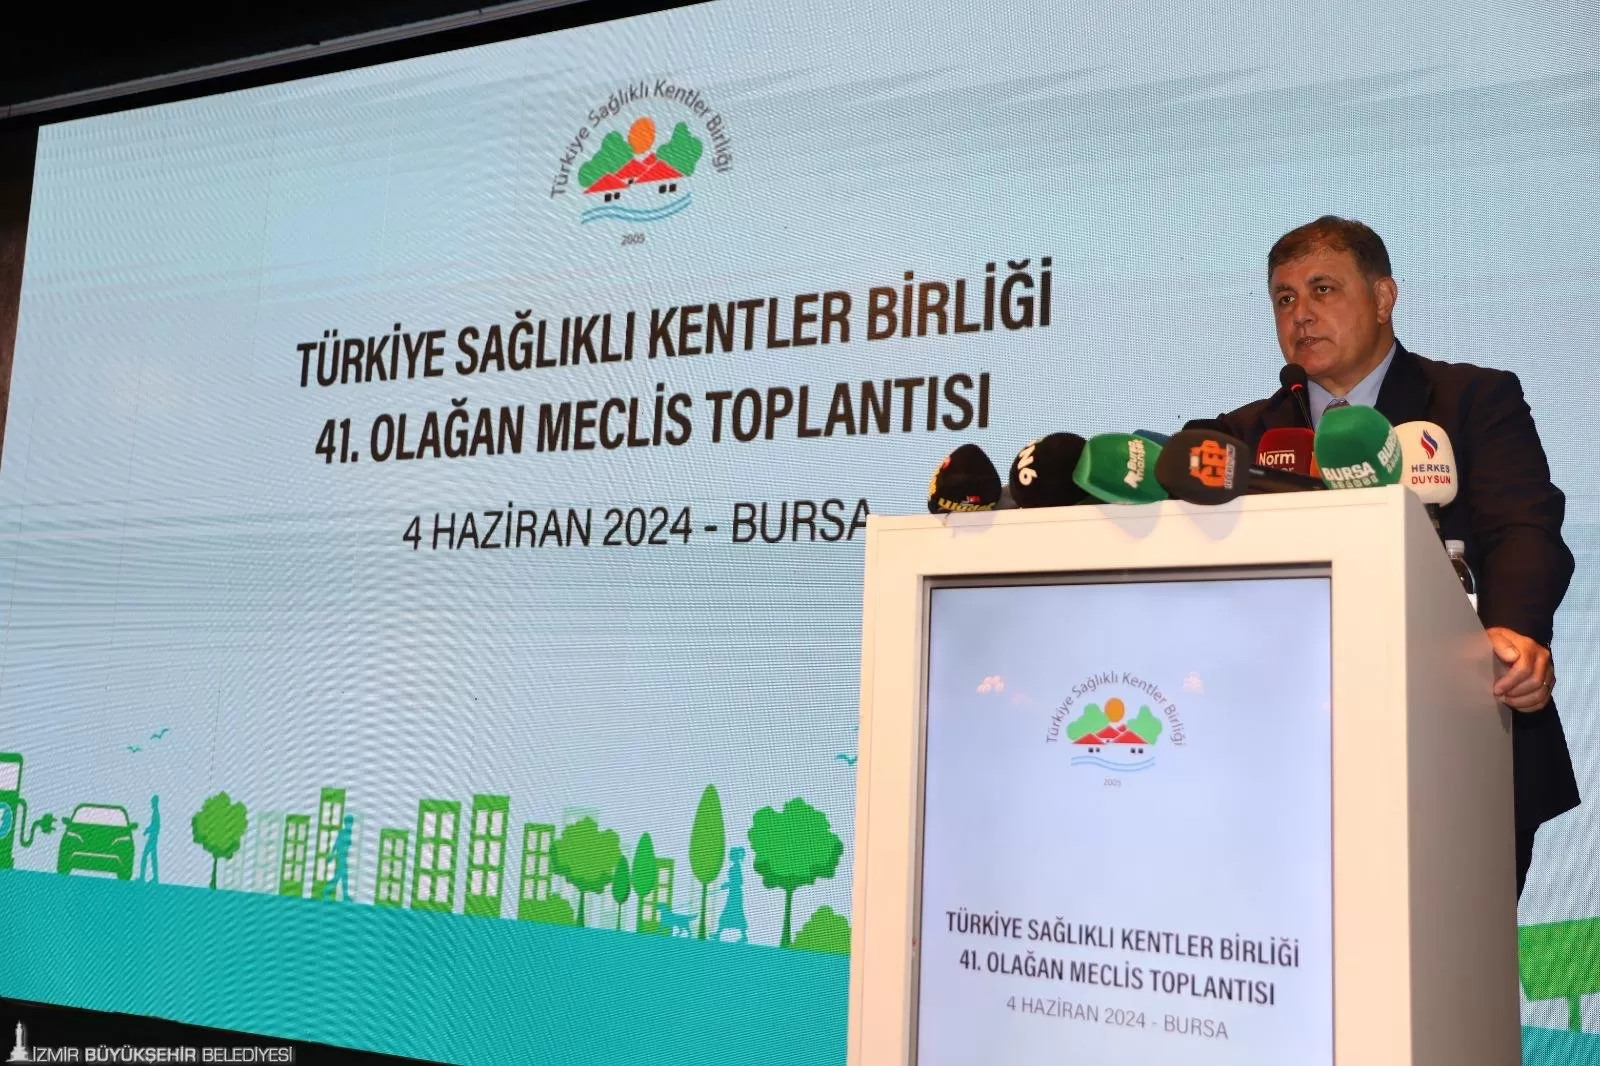 İzmir Büyükşehir Belediye Başkanı Dr. Cemil Tugay, Türkiye Sağlıklı Kentler Birliği'nin (SKB) 41. Olağan Meclis Toplantısı'nda oy birliğiyle yeni dönem başkanı seçildi. 